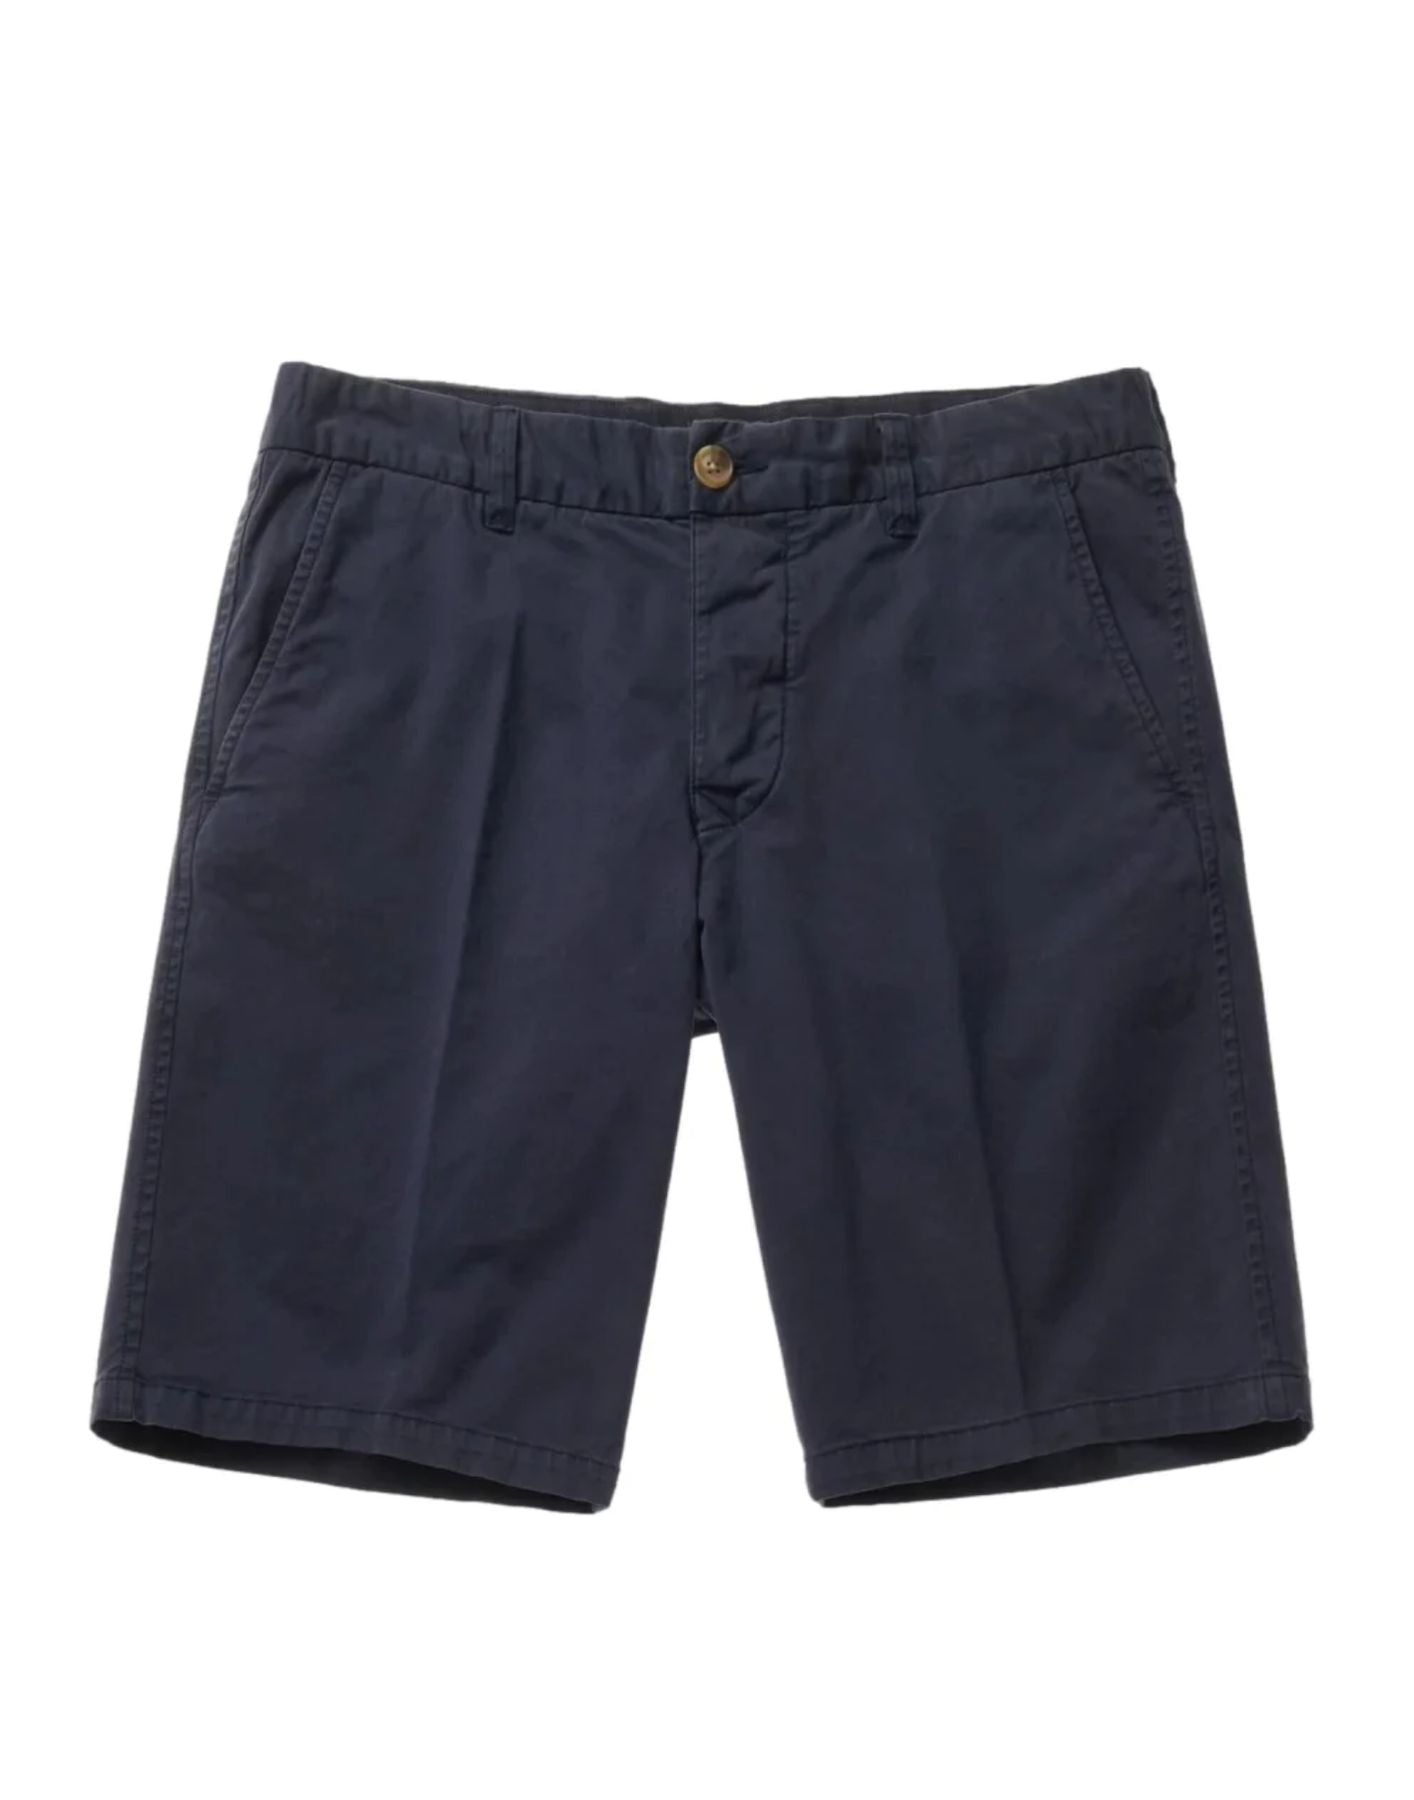 Pantalones cortos para hombre 24SBLUP02406 006855 888 Blauer